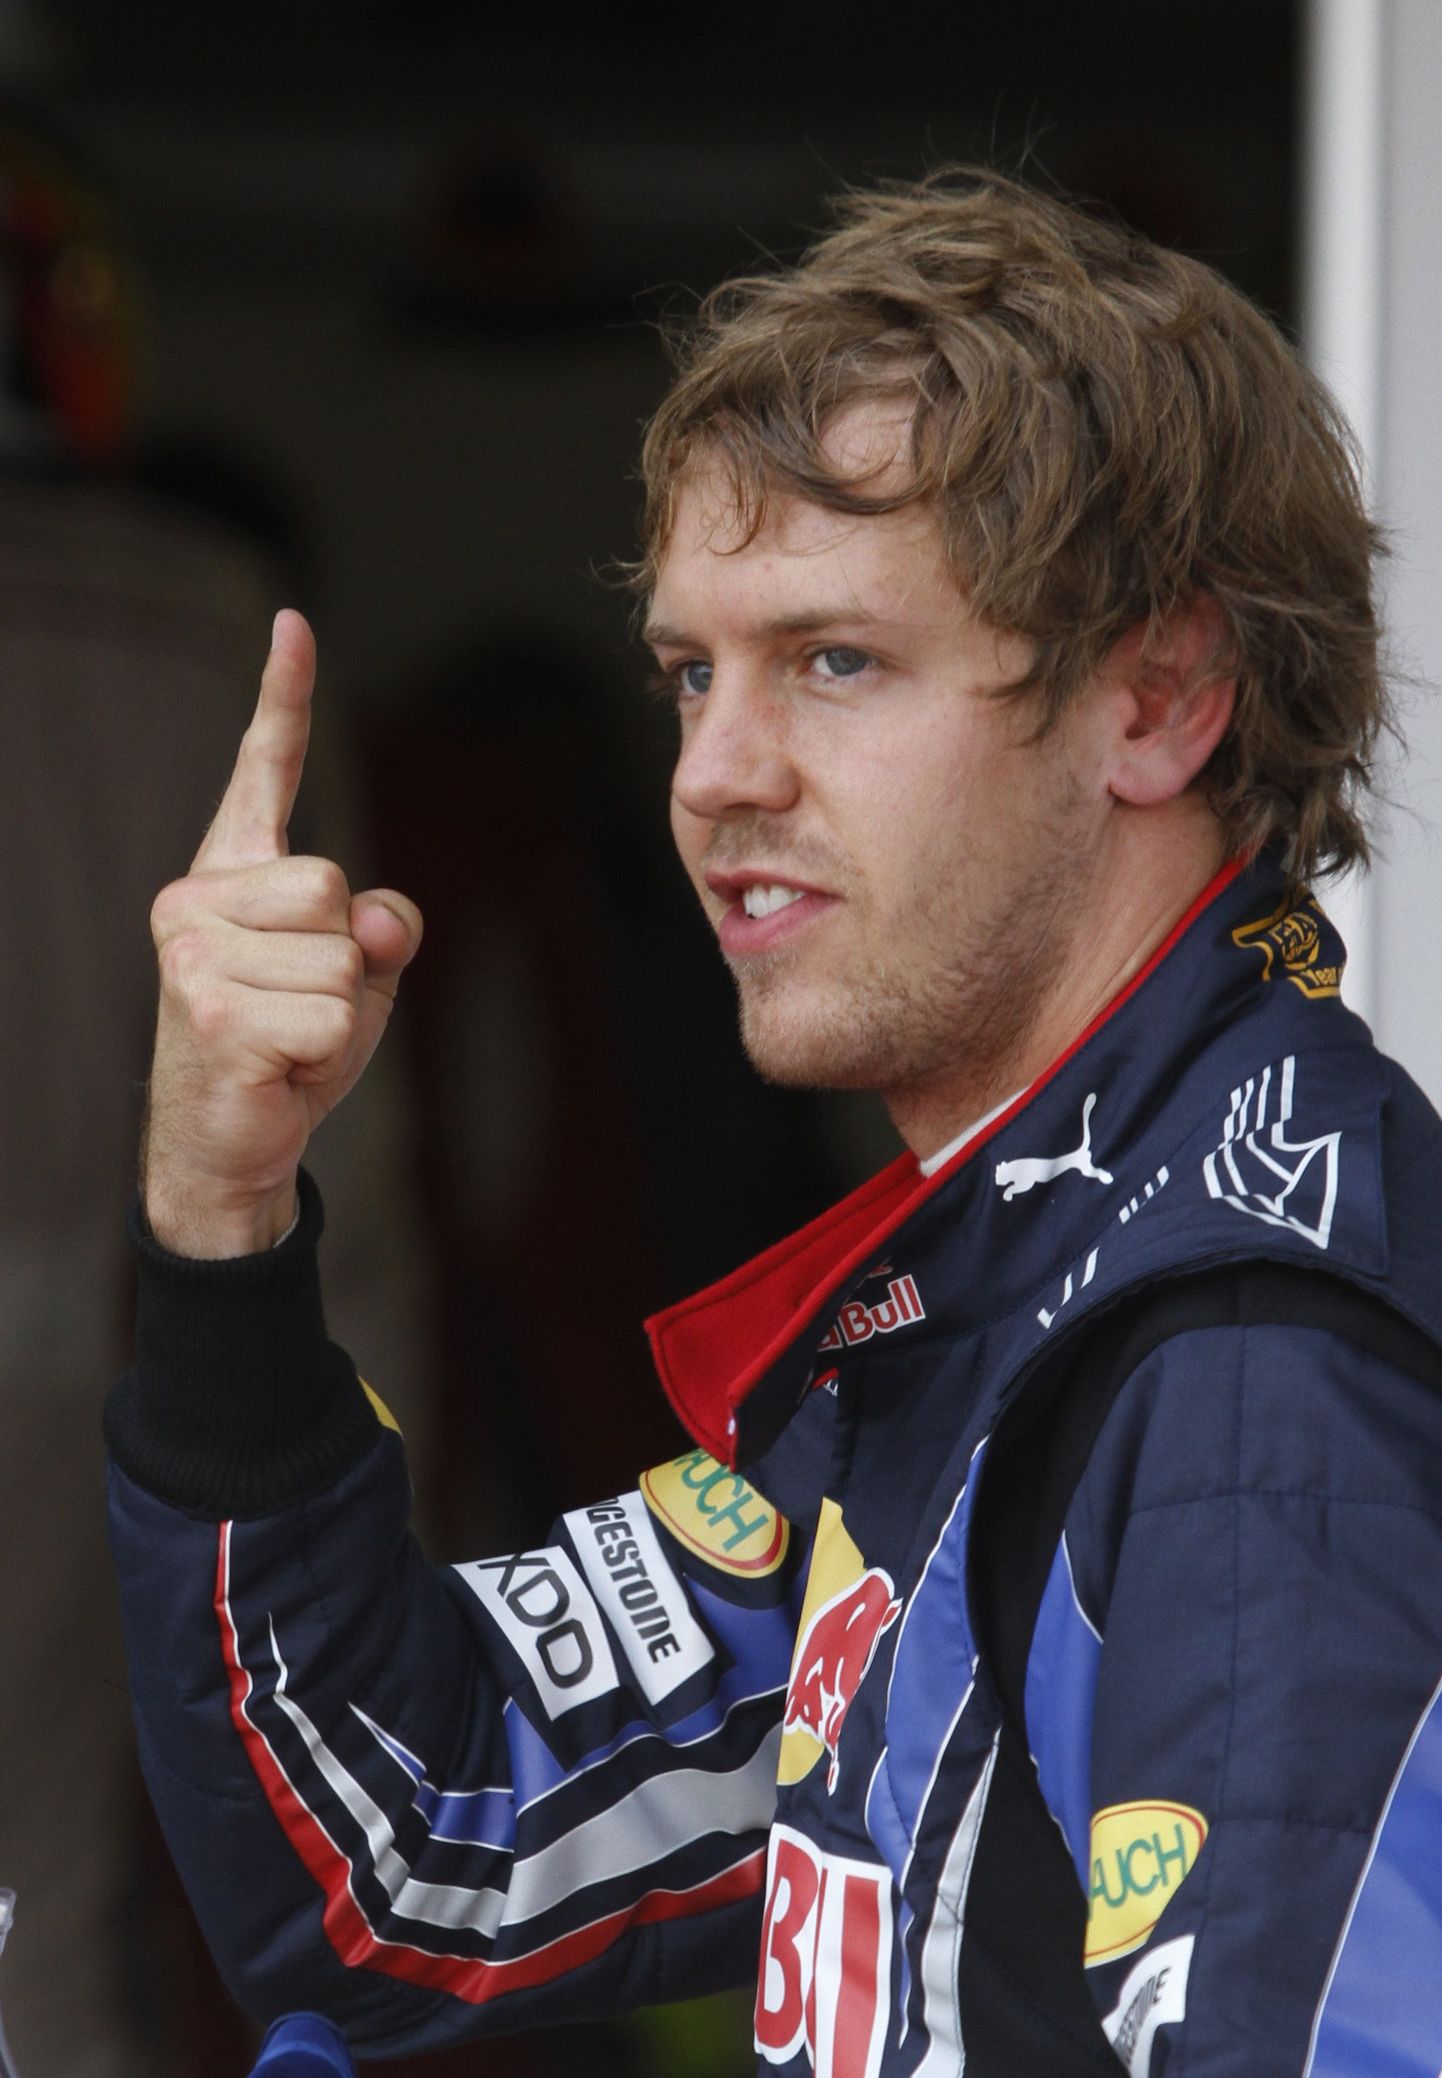 Red Bulli piloot Sebastian Vettel